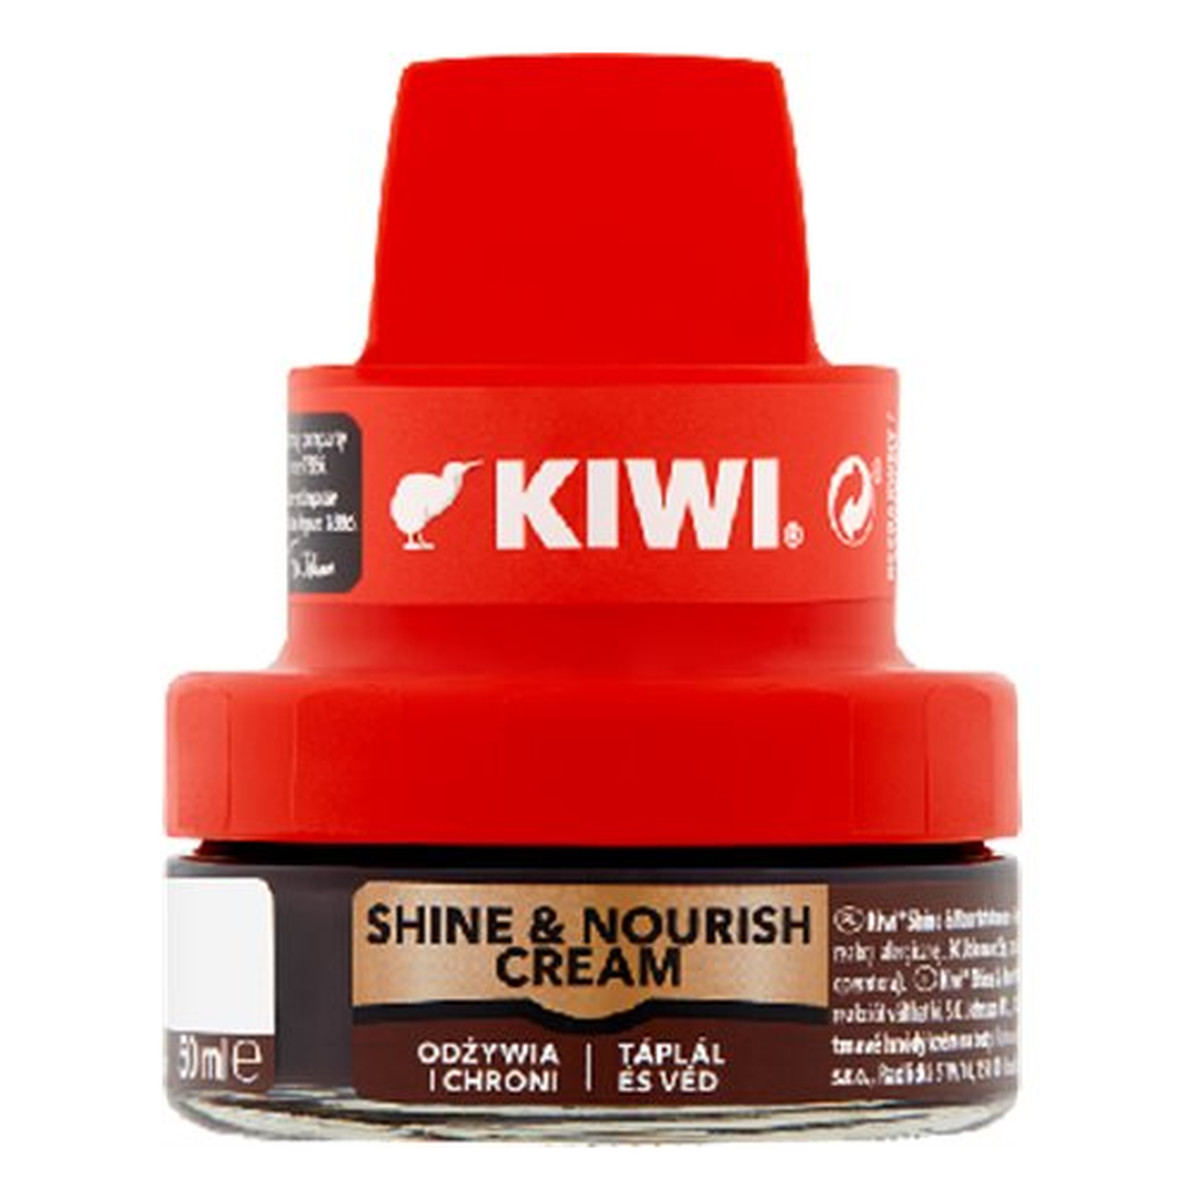 Kiwi Shine & Nourish Cream Krem do obuwia ciemny brąz 50ml